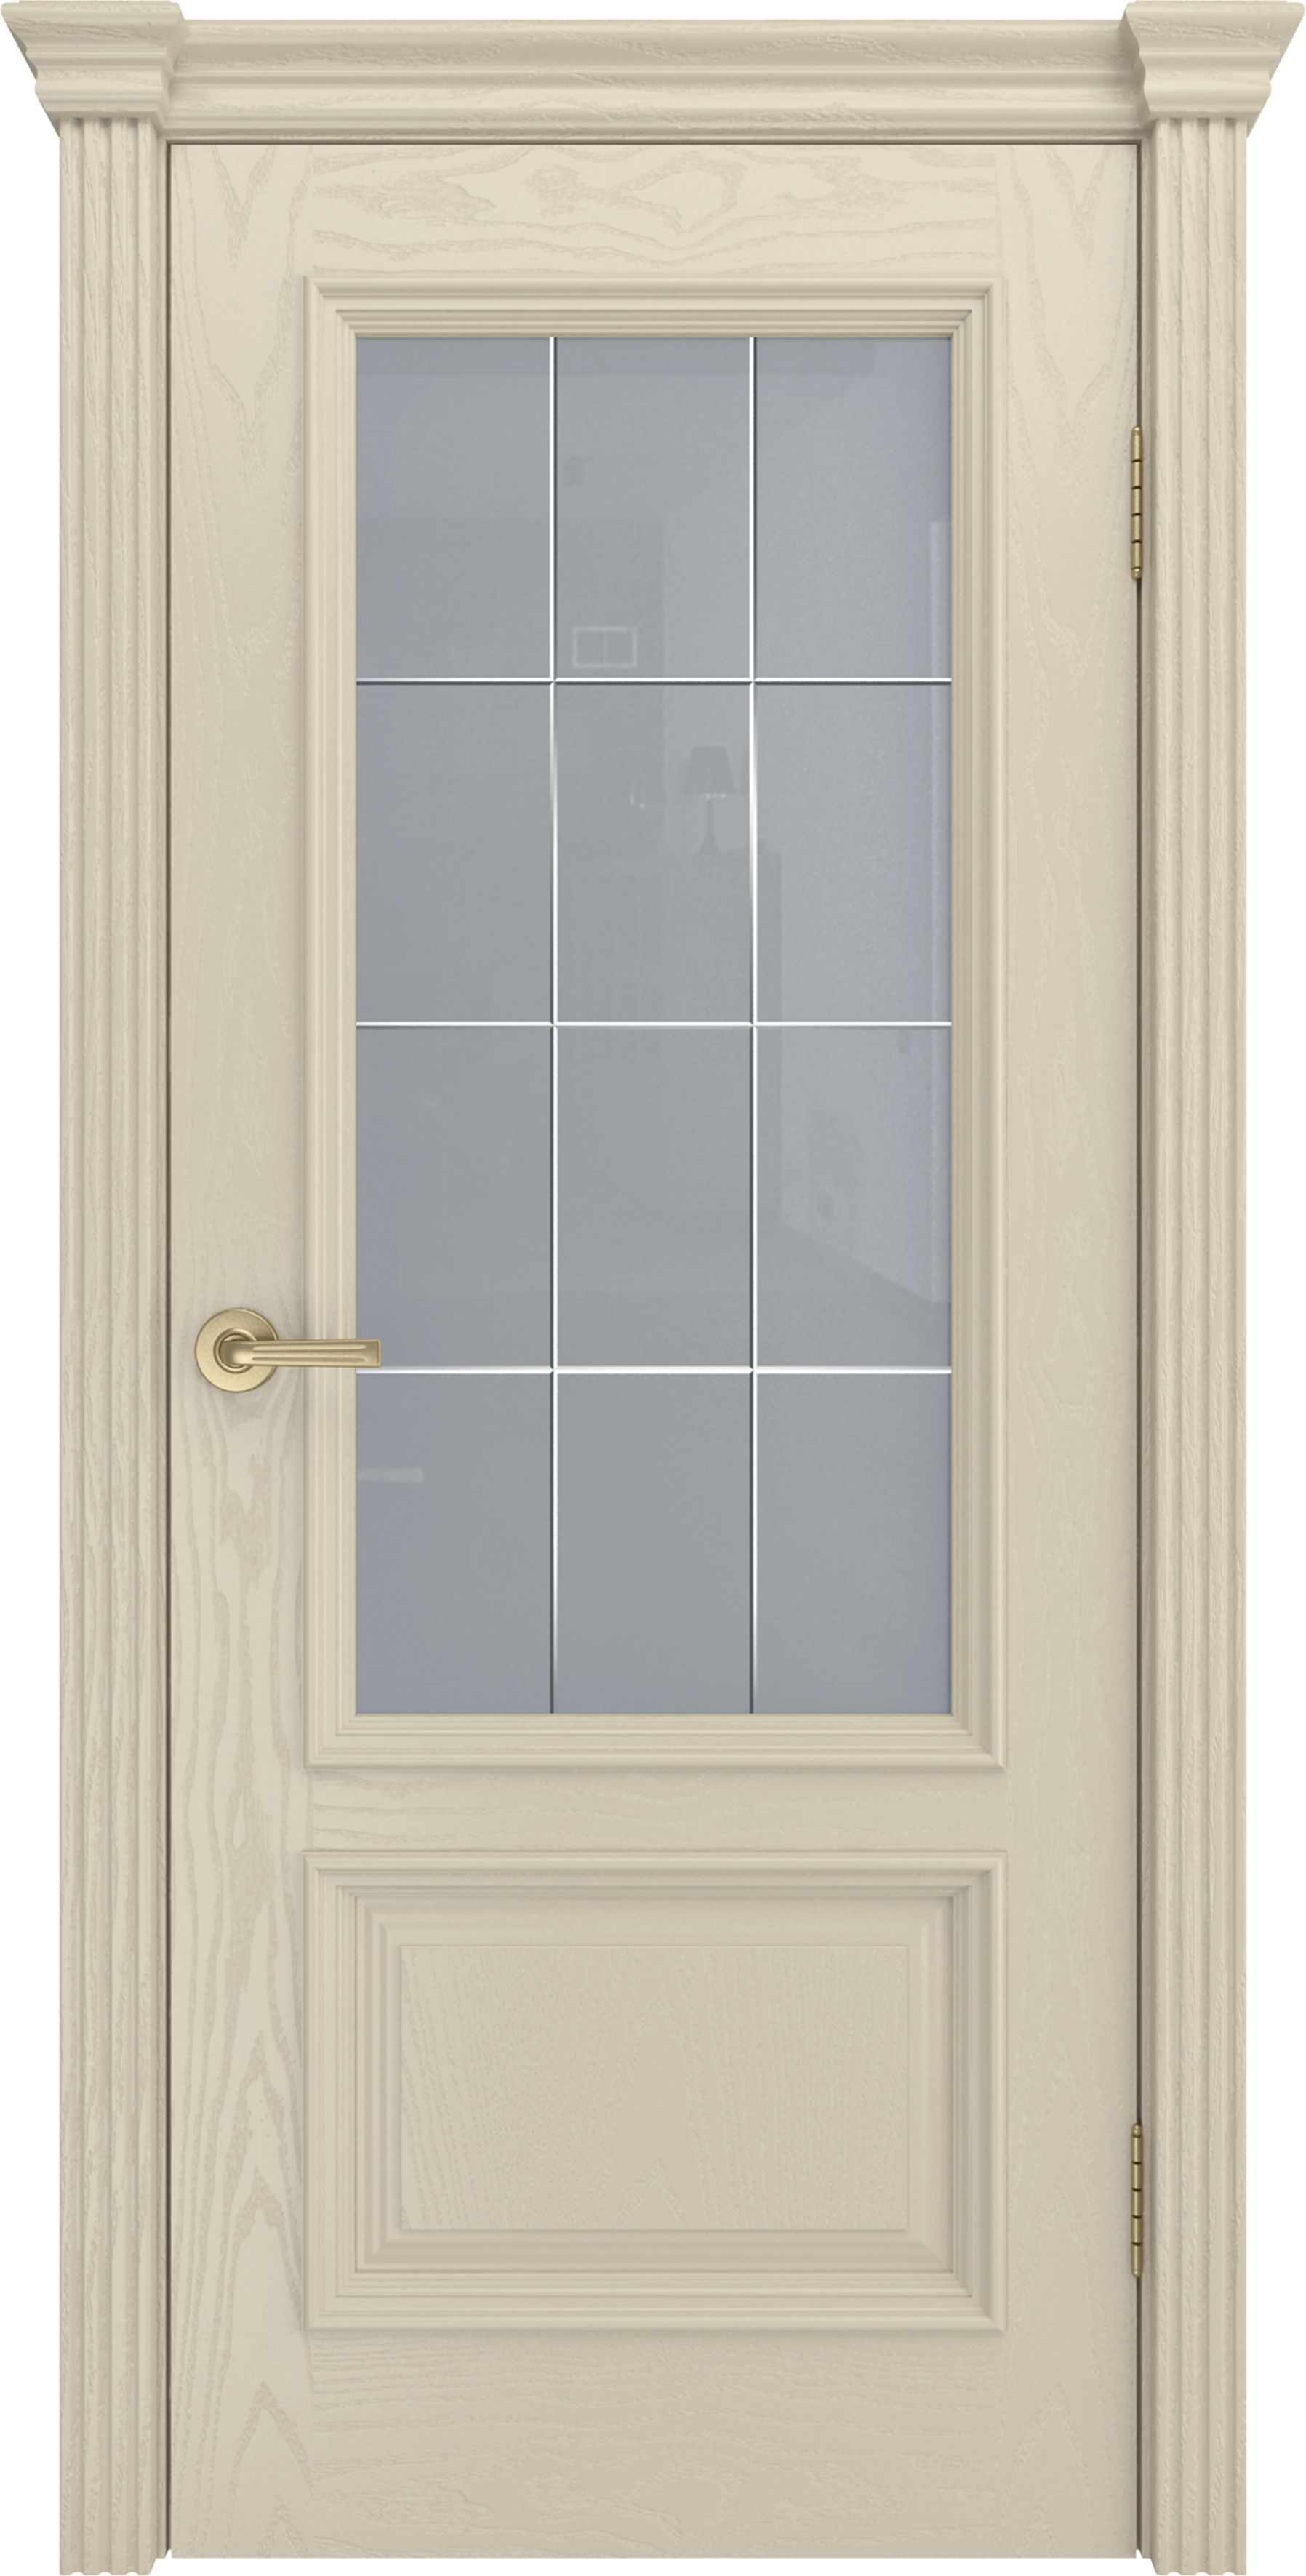 Двери шпонированные ТЕКОНА Фрейм 07 со стеклом Крем размер 200 х 70 см. артикул F0000069811